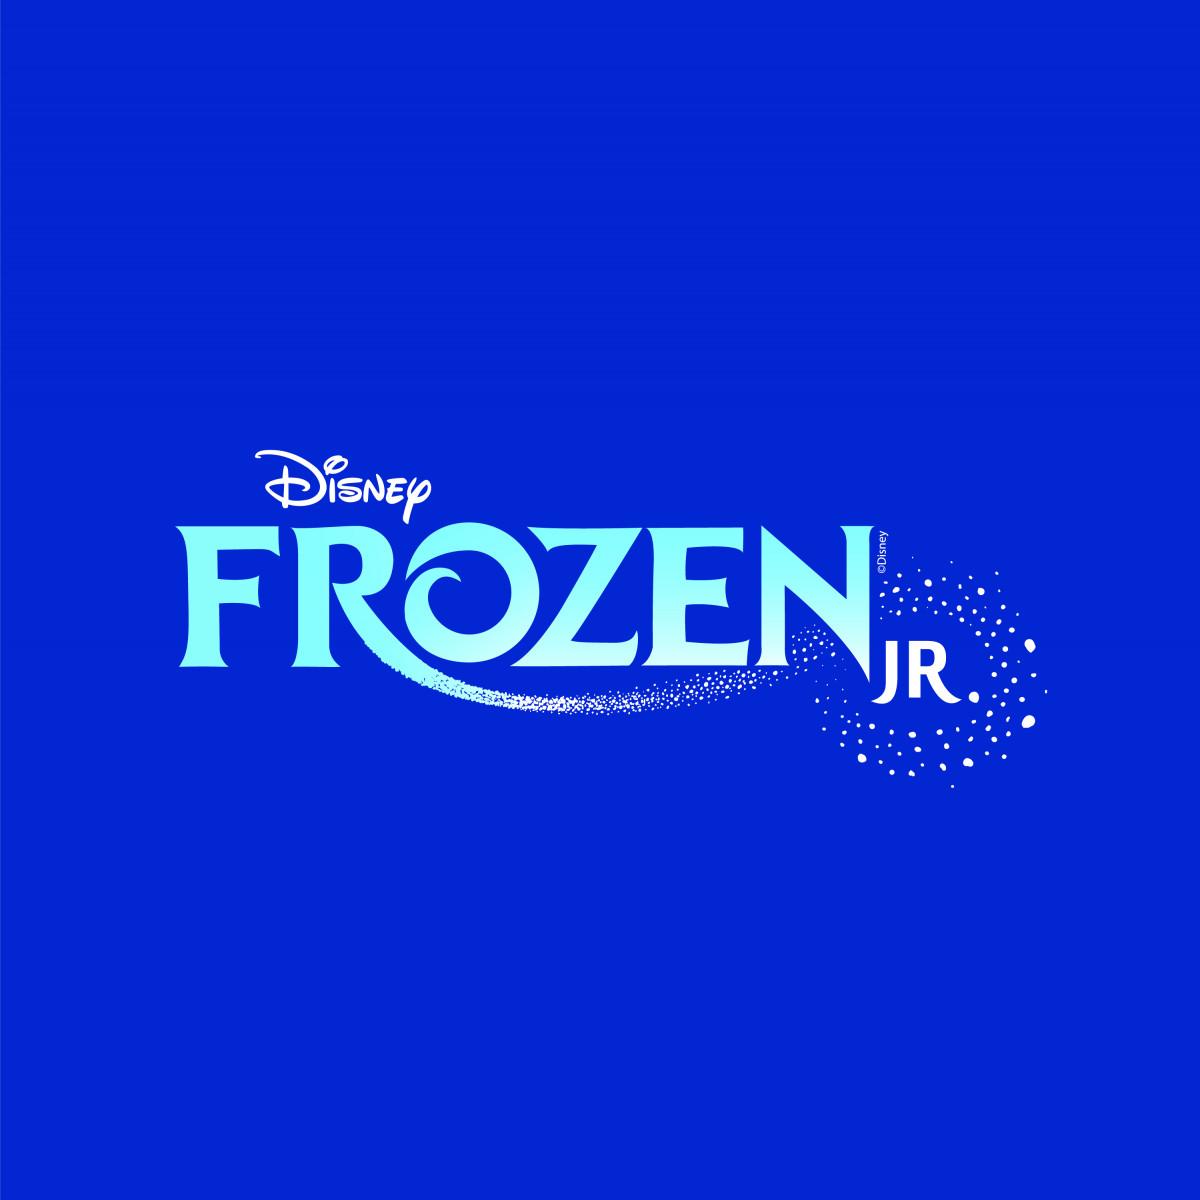 Disney's Frozen Jr.